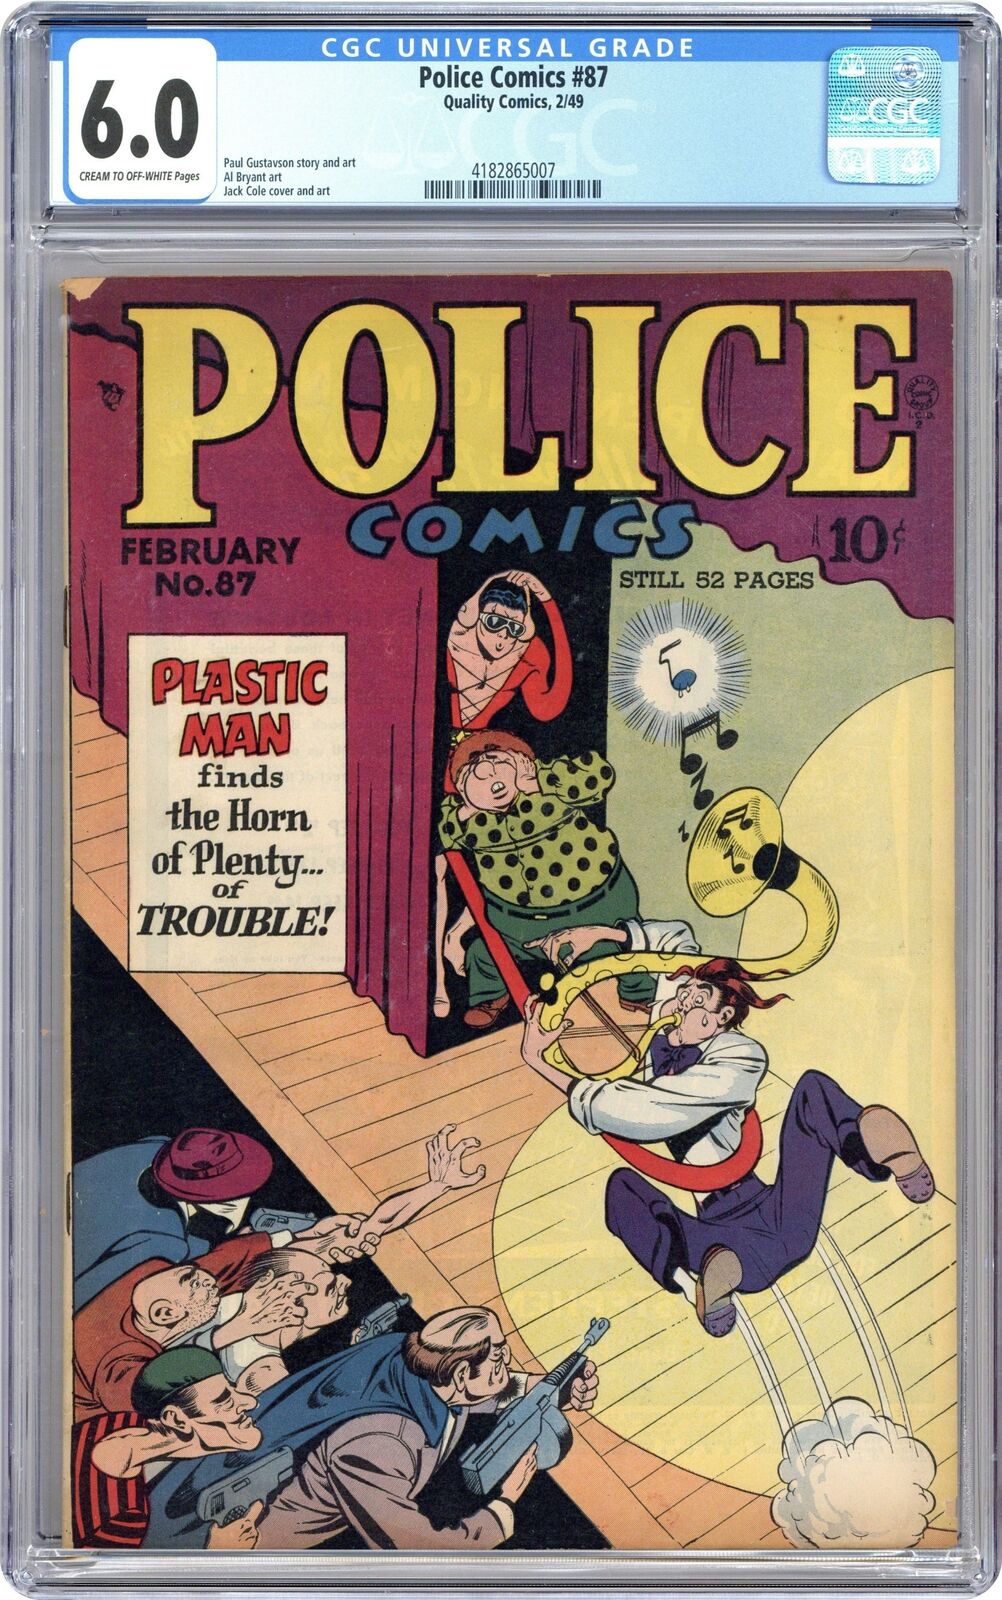 Police Comics #87 CGC 6.0 1949 4182865007